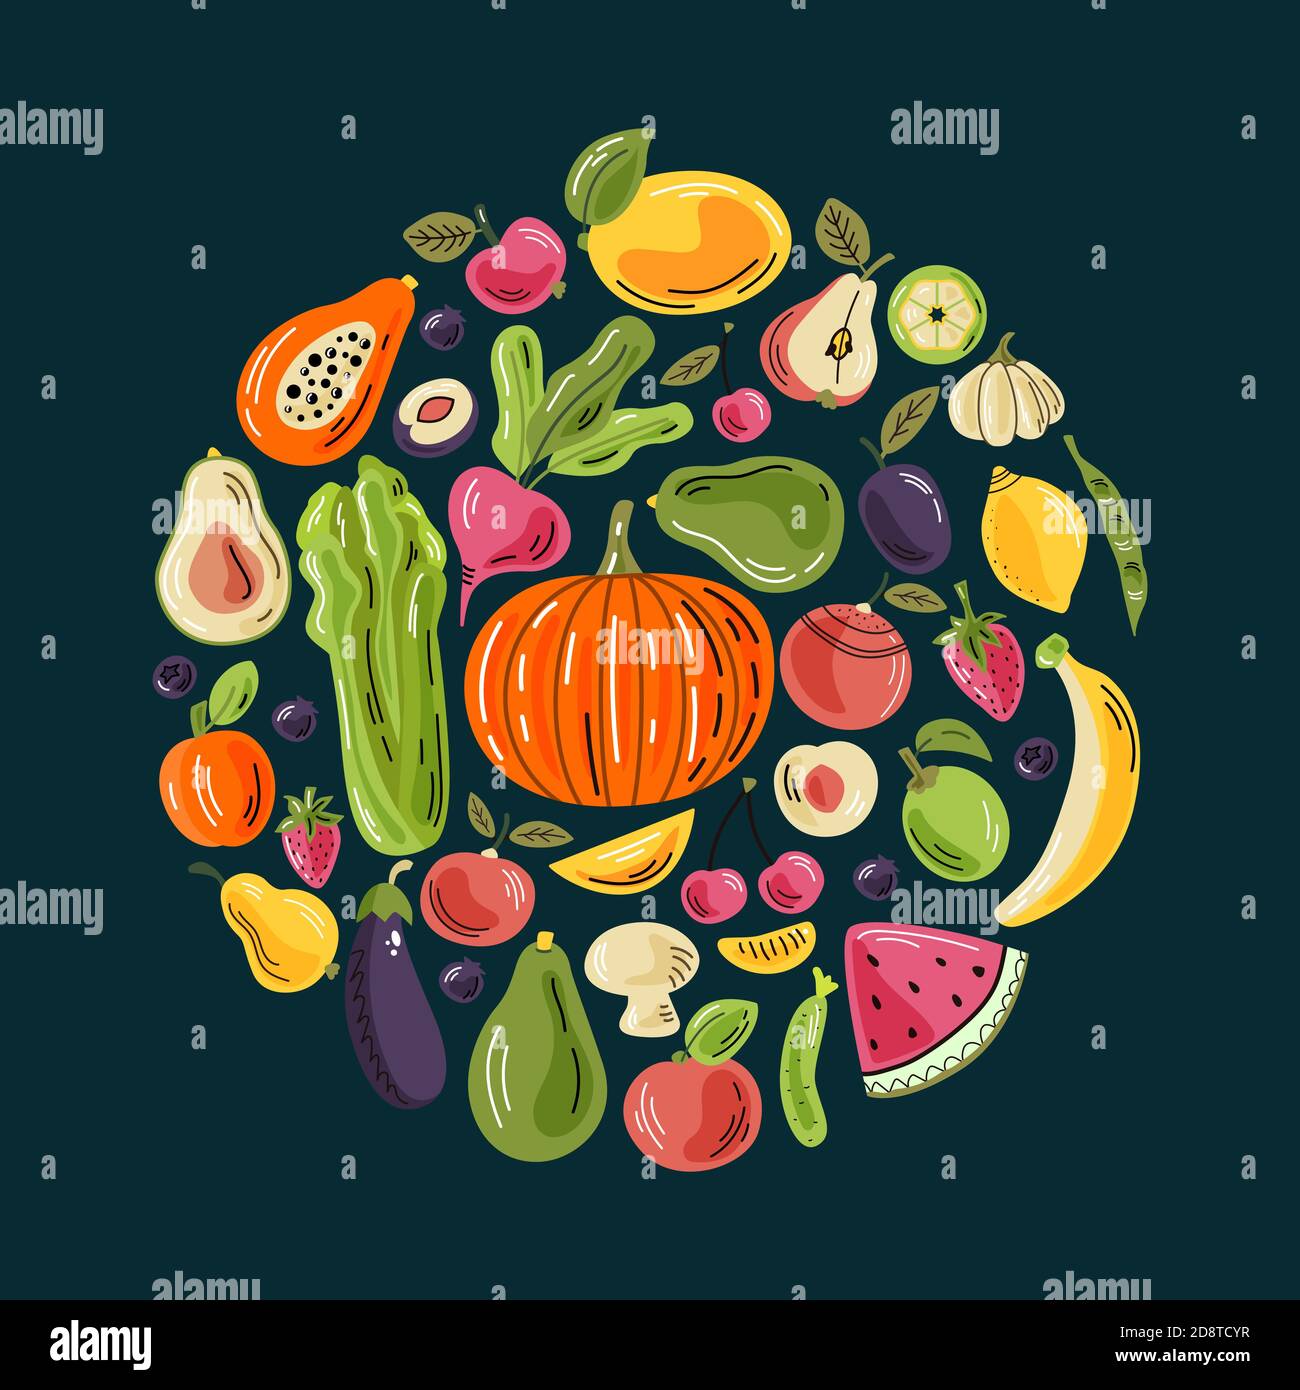 Vector Obst und Gemüse in runder Zusammensetzung auf dem dunklen Hintergrund. Eine helle Illustration für gesunde frische Lebensmittel. Isolierte Designelemente. Stock Vektor